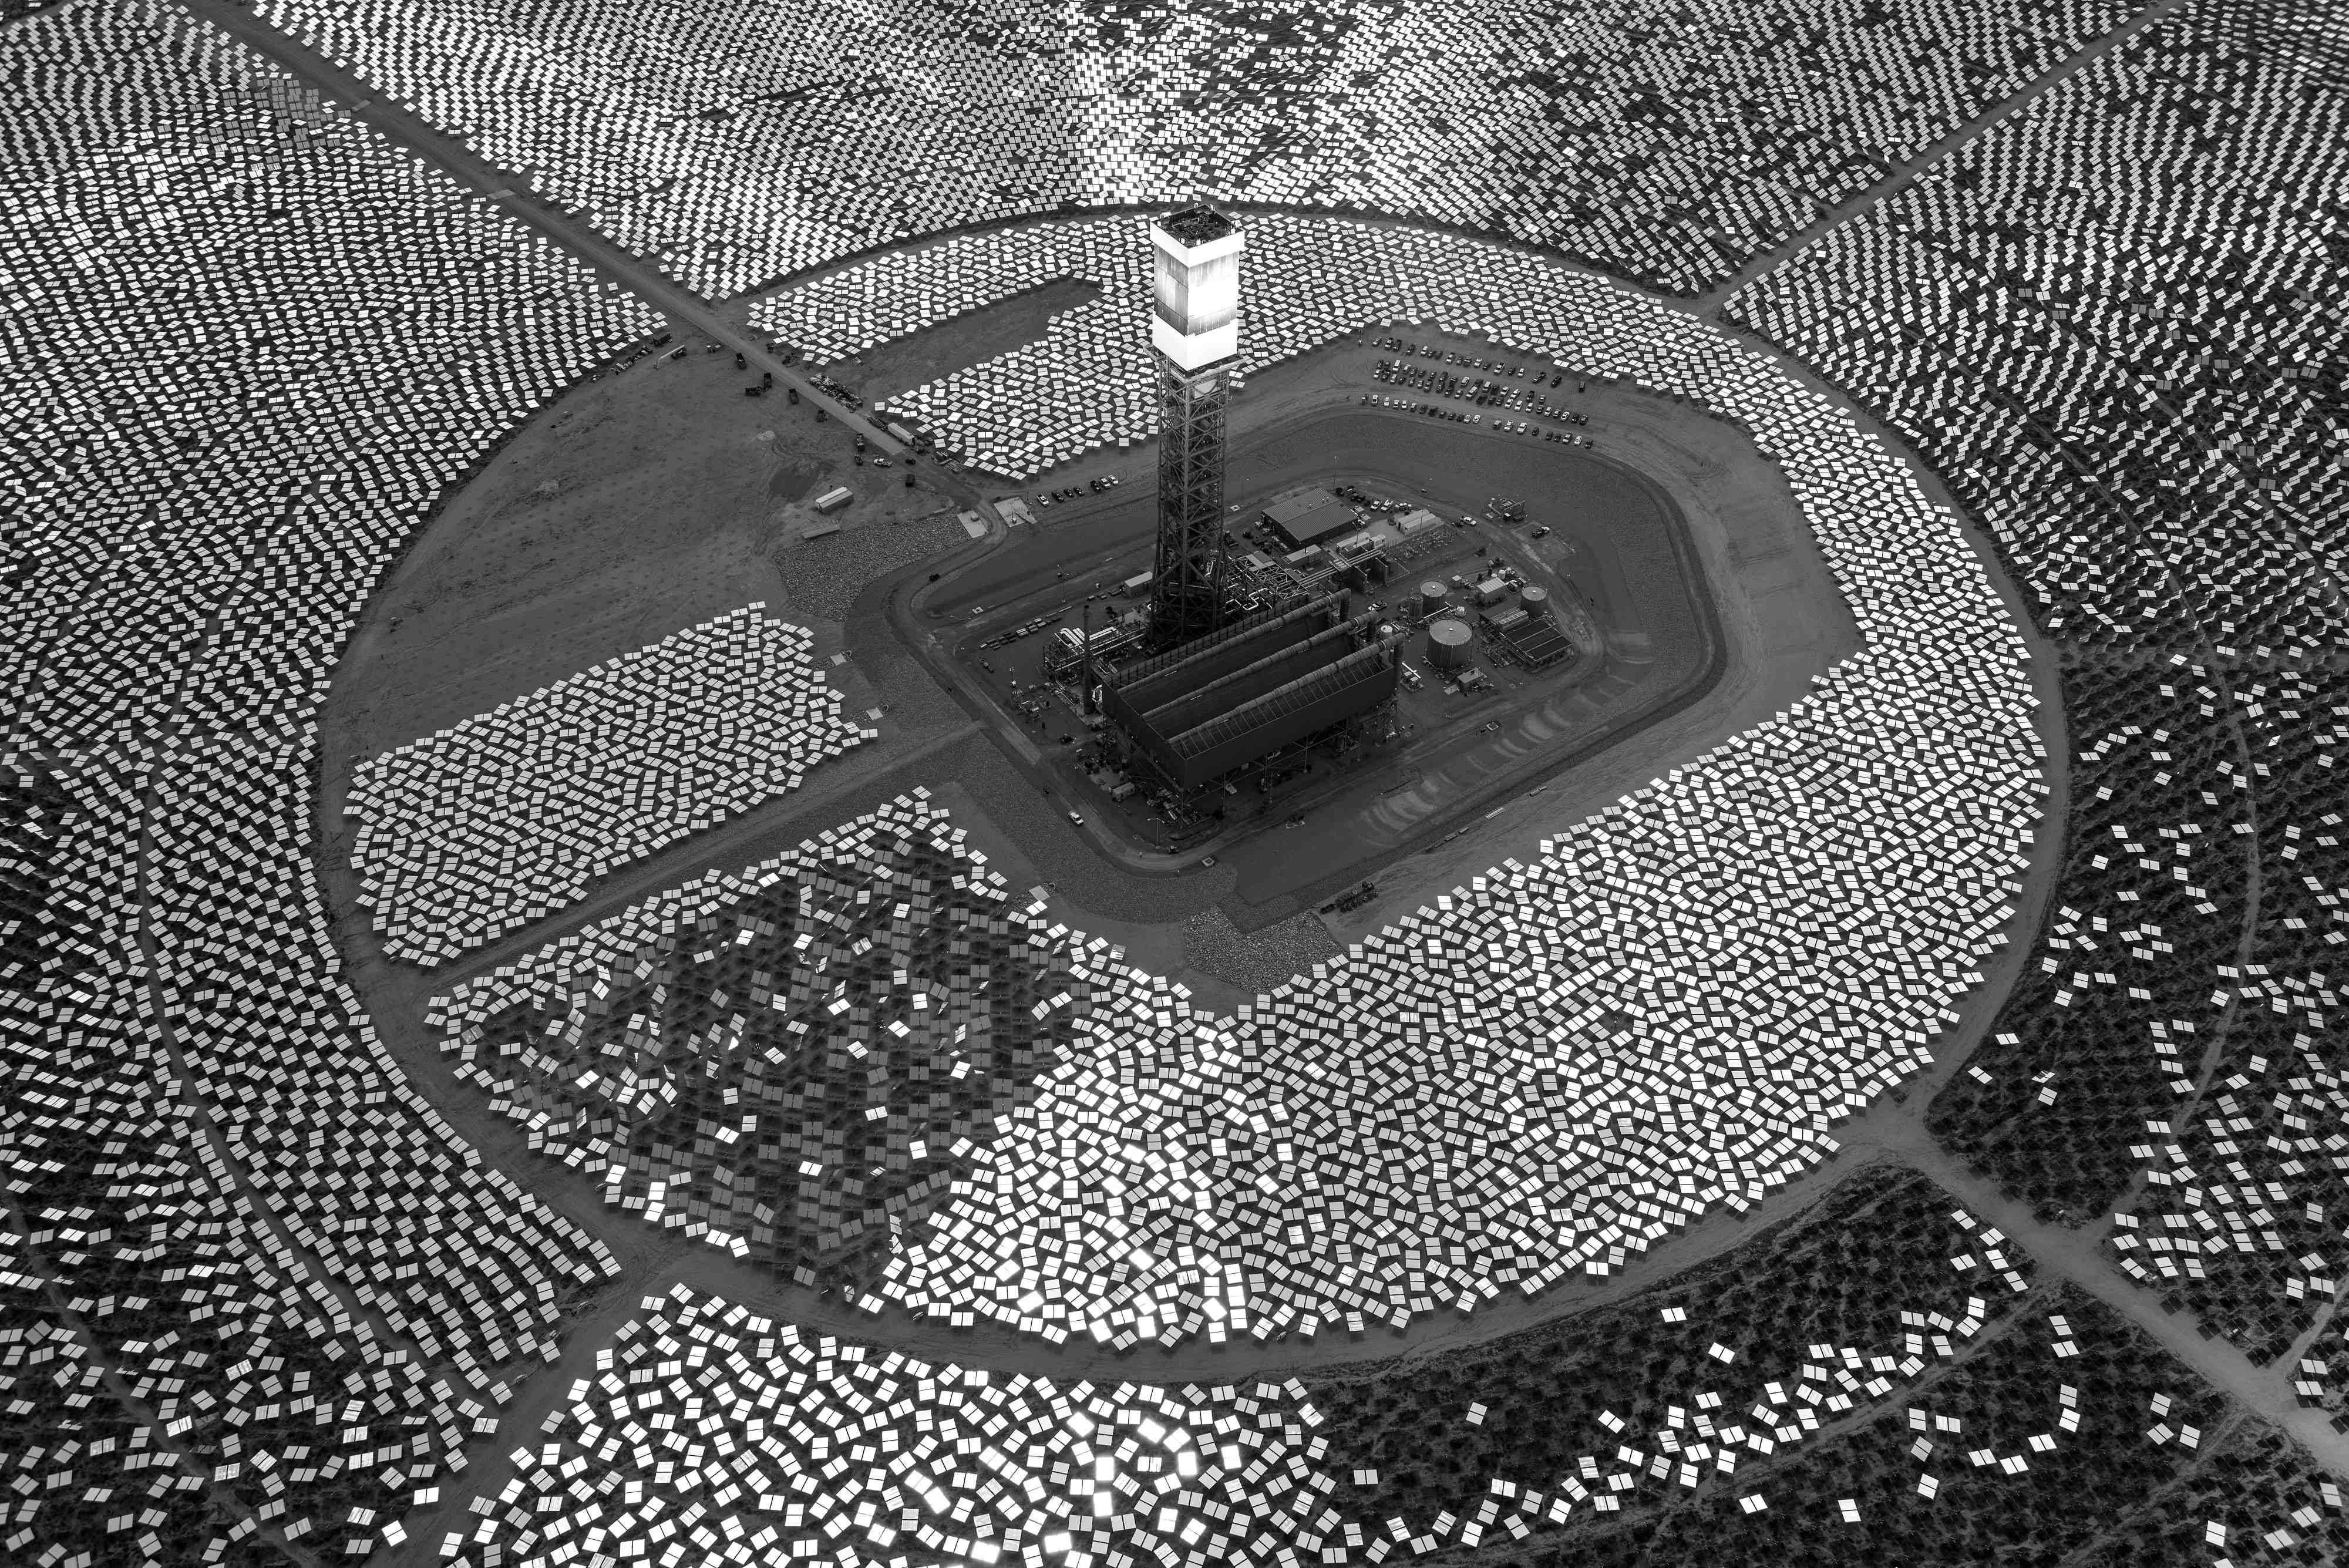 Jamey Stillings Black and White Photograph - Evolution of Ivanpah Solar, #11590 5 September 2013